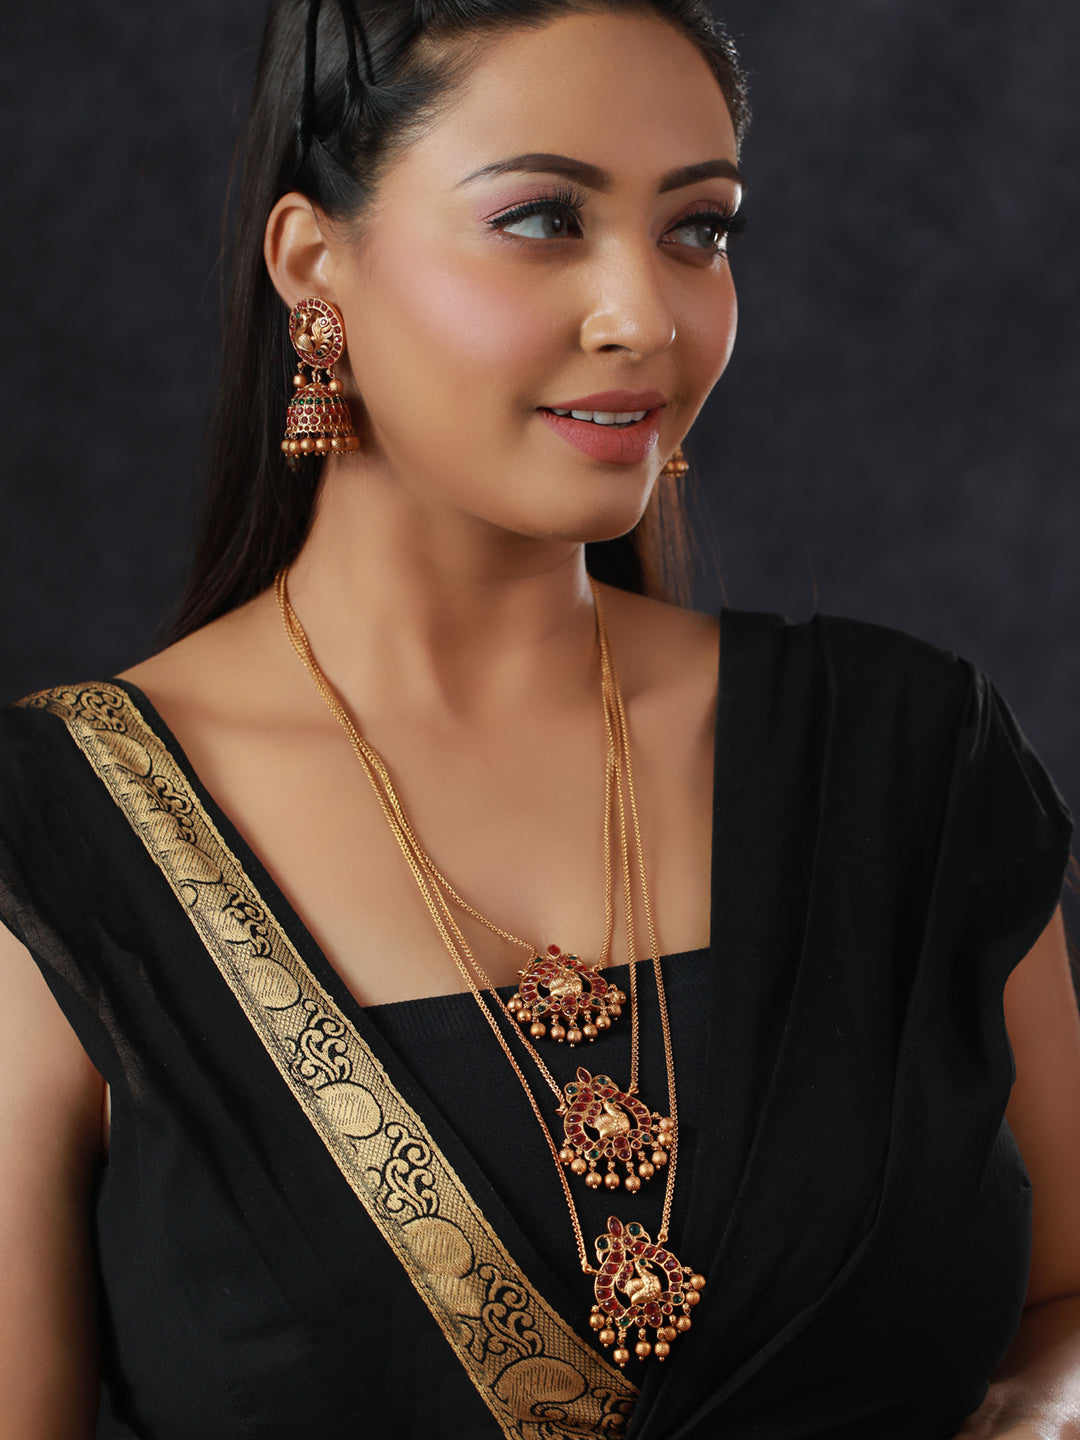 Priyaasi Indian Jewelry Set for Women